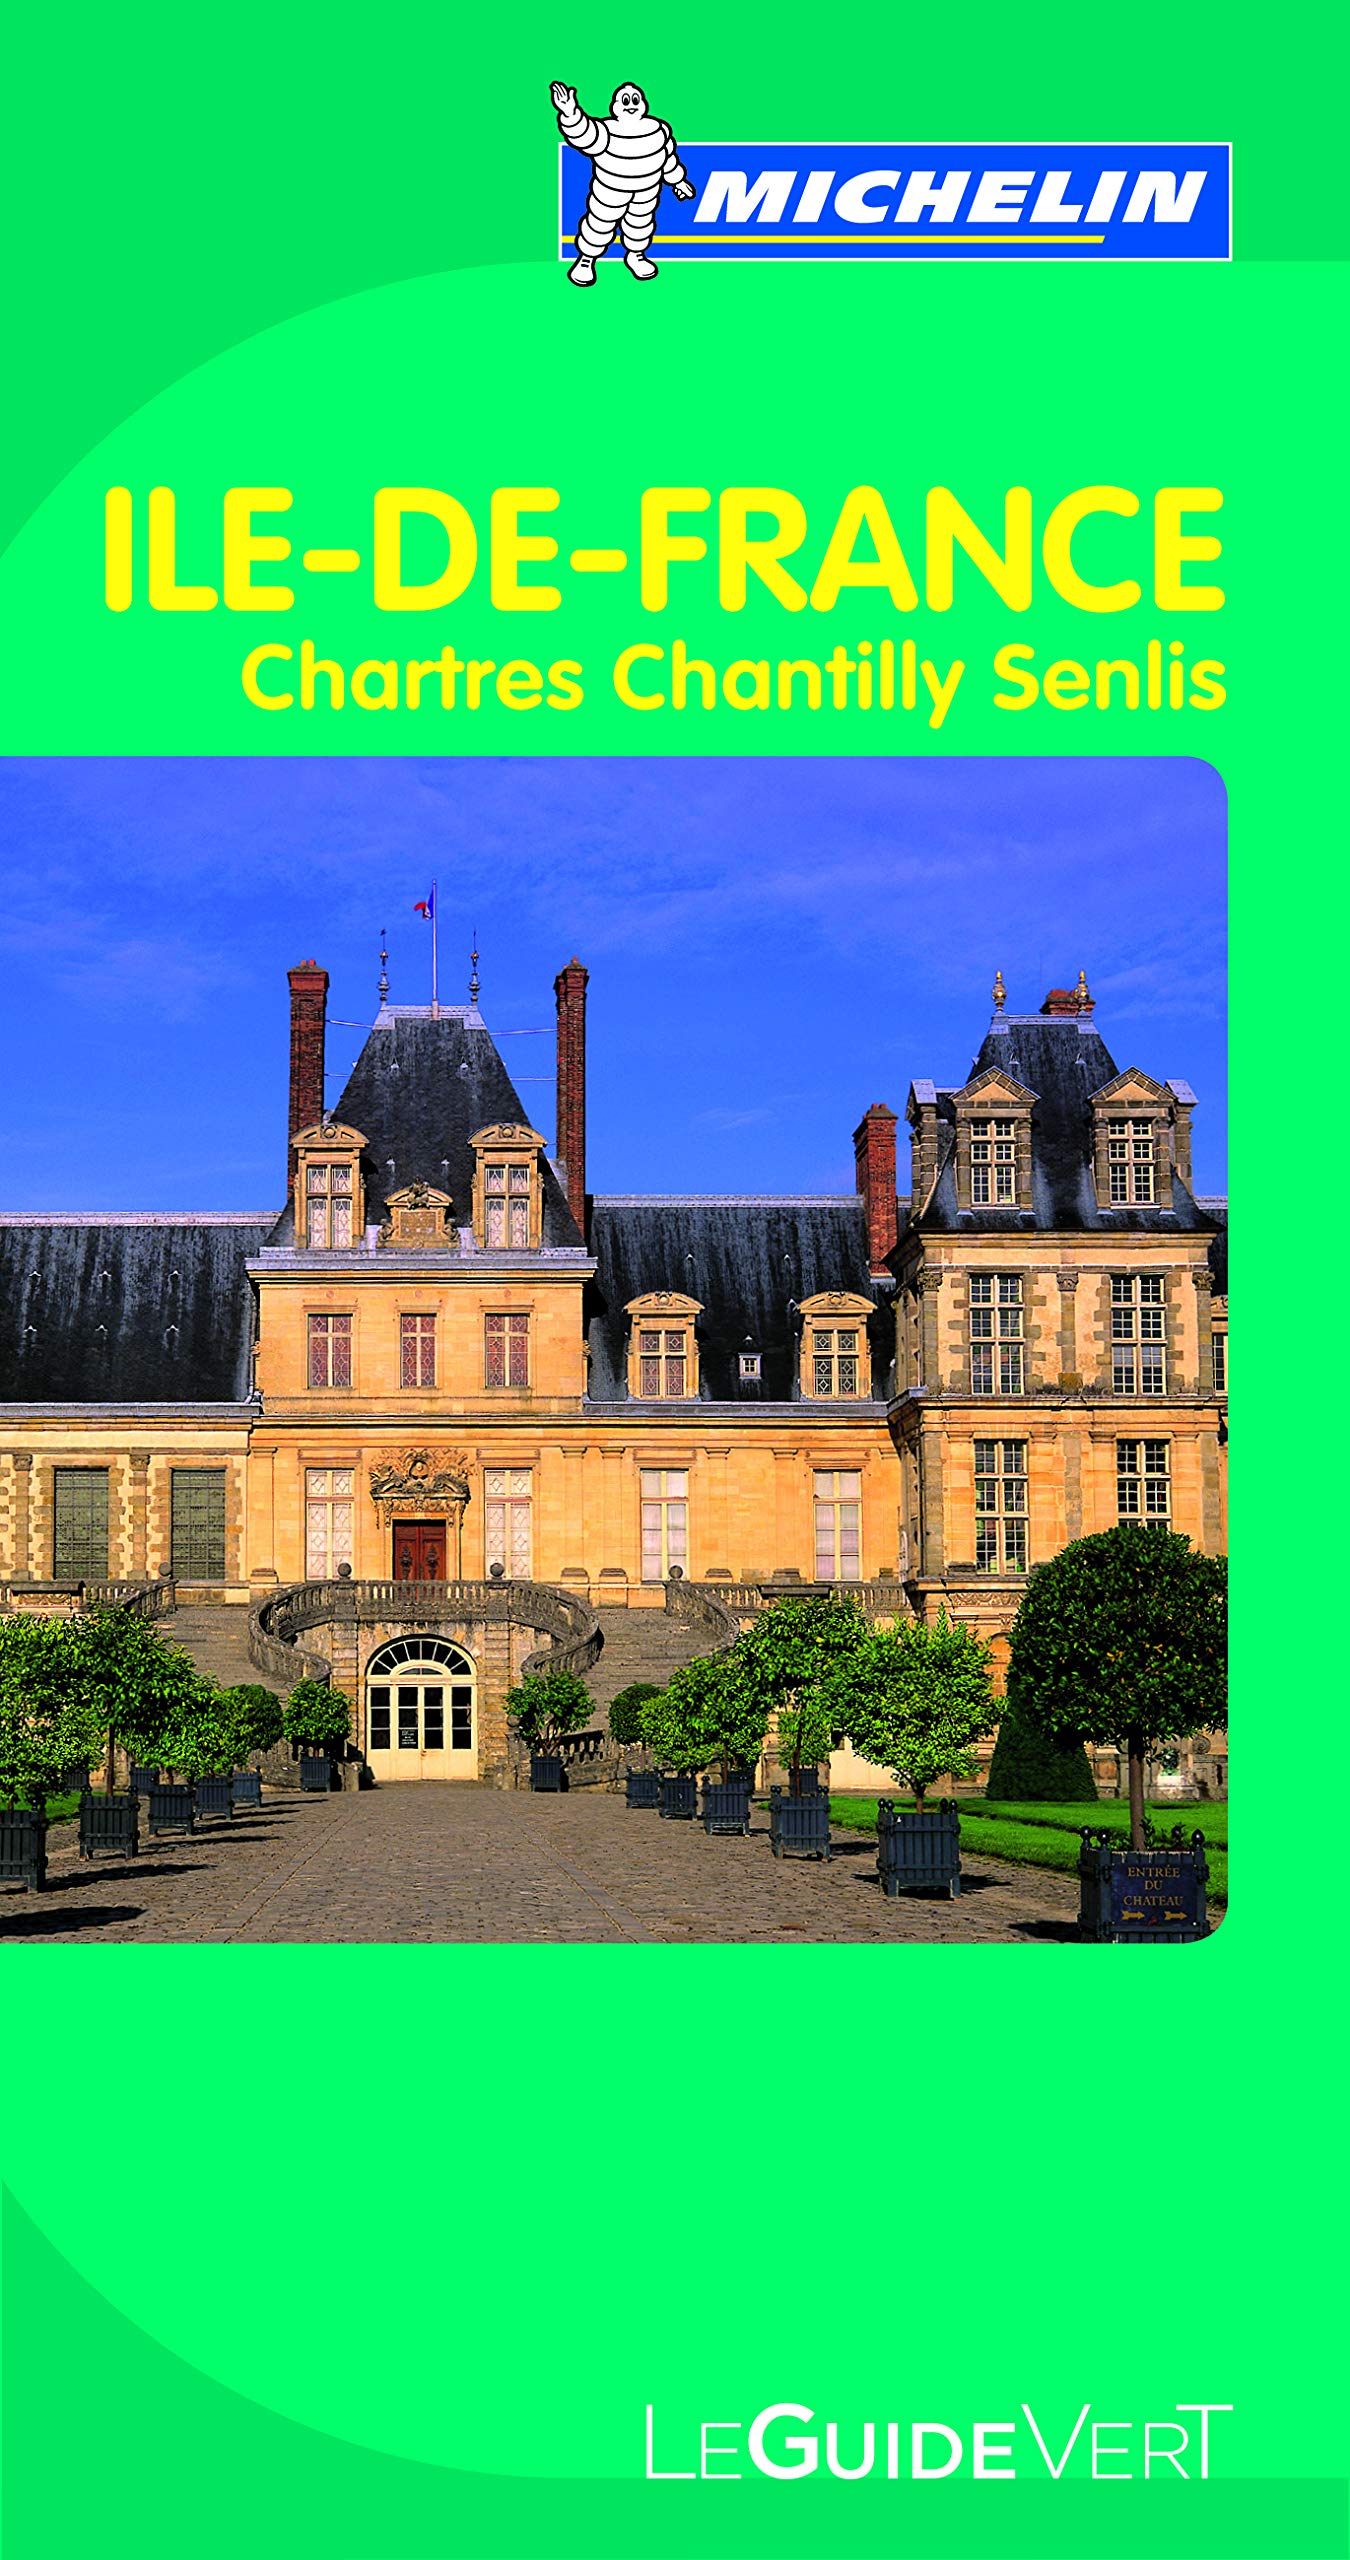 Guide Vert Ile de France,Chartres,Chantilly, Senlis